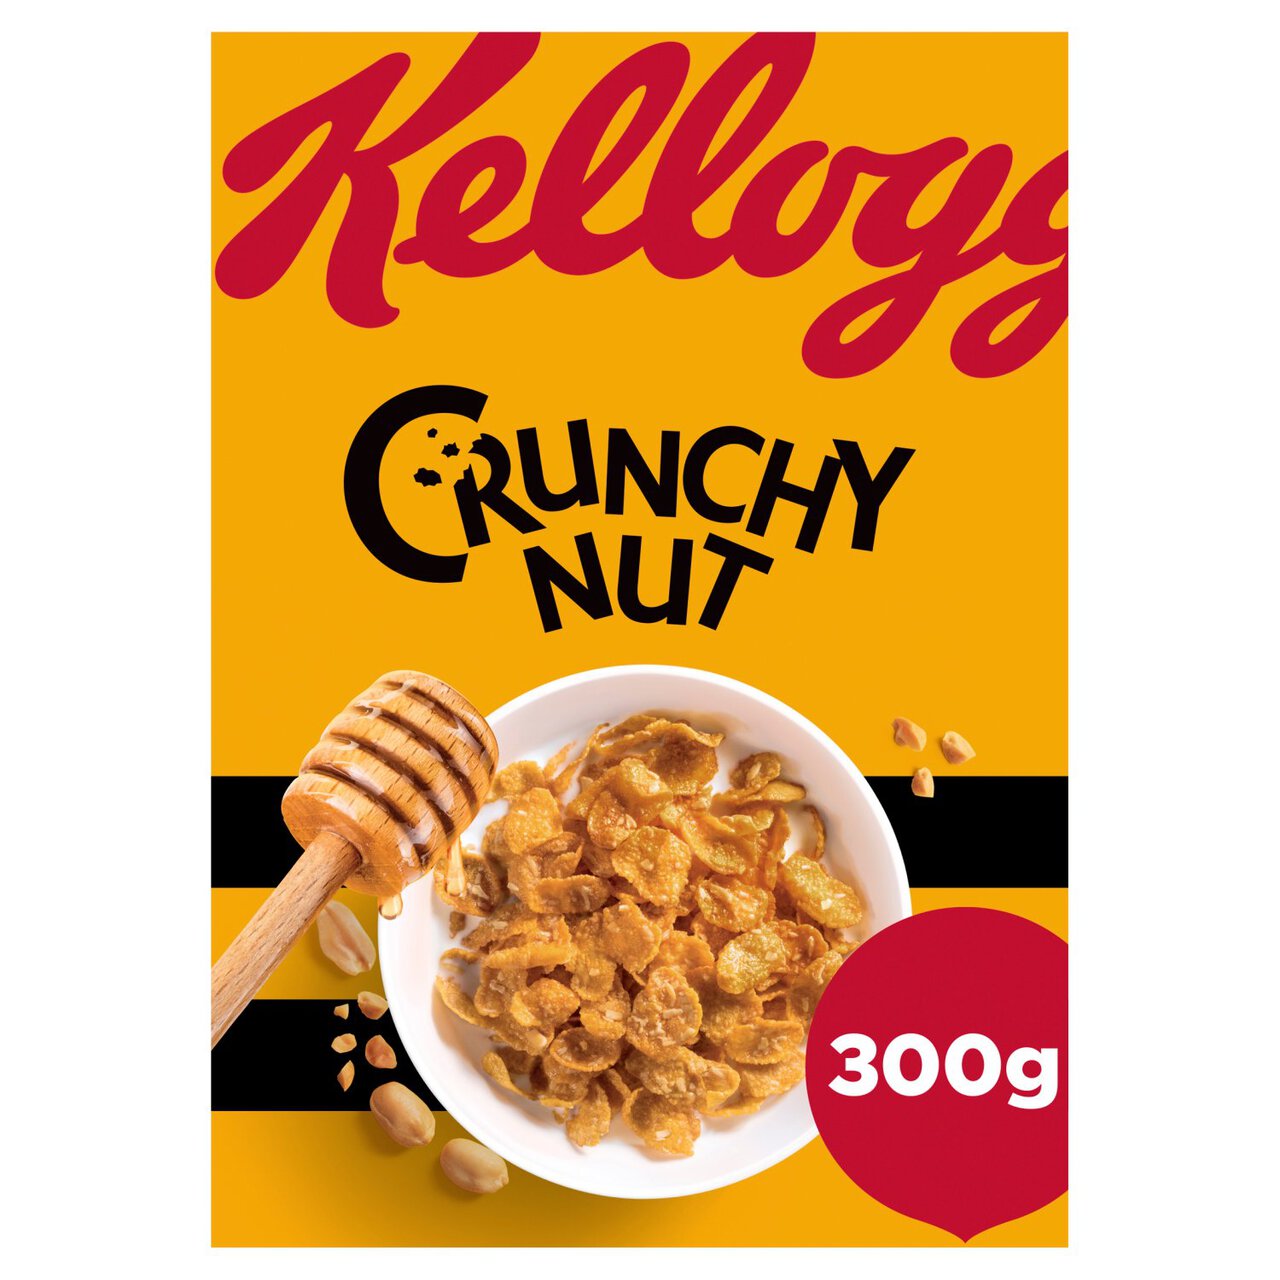 Kellogg's Crunchy Nut Original Breakfast Cereal 300g 300g